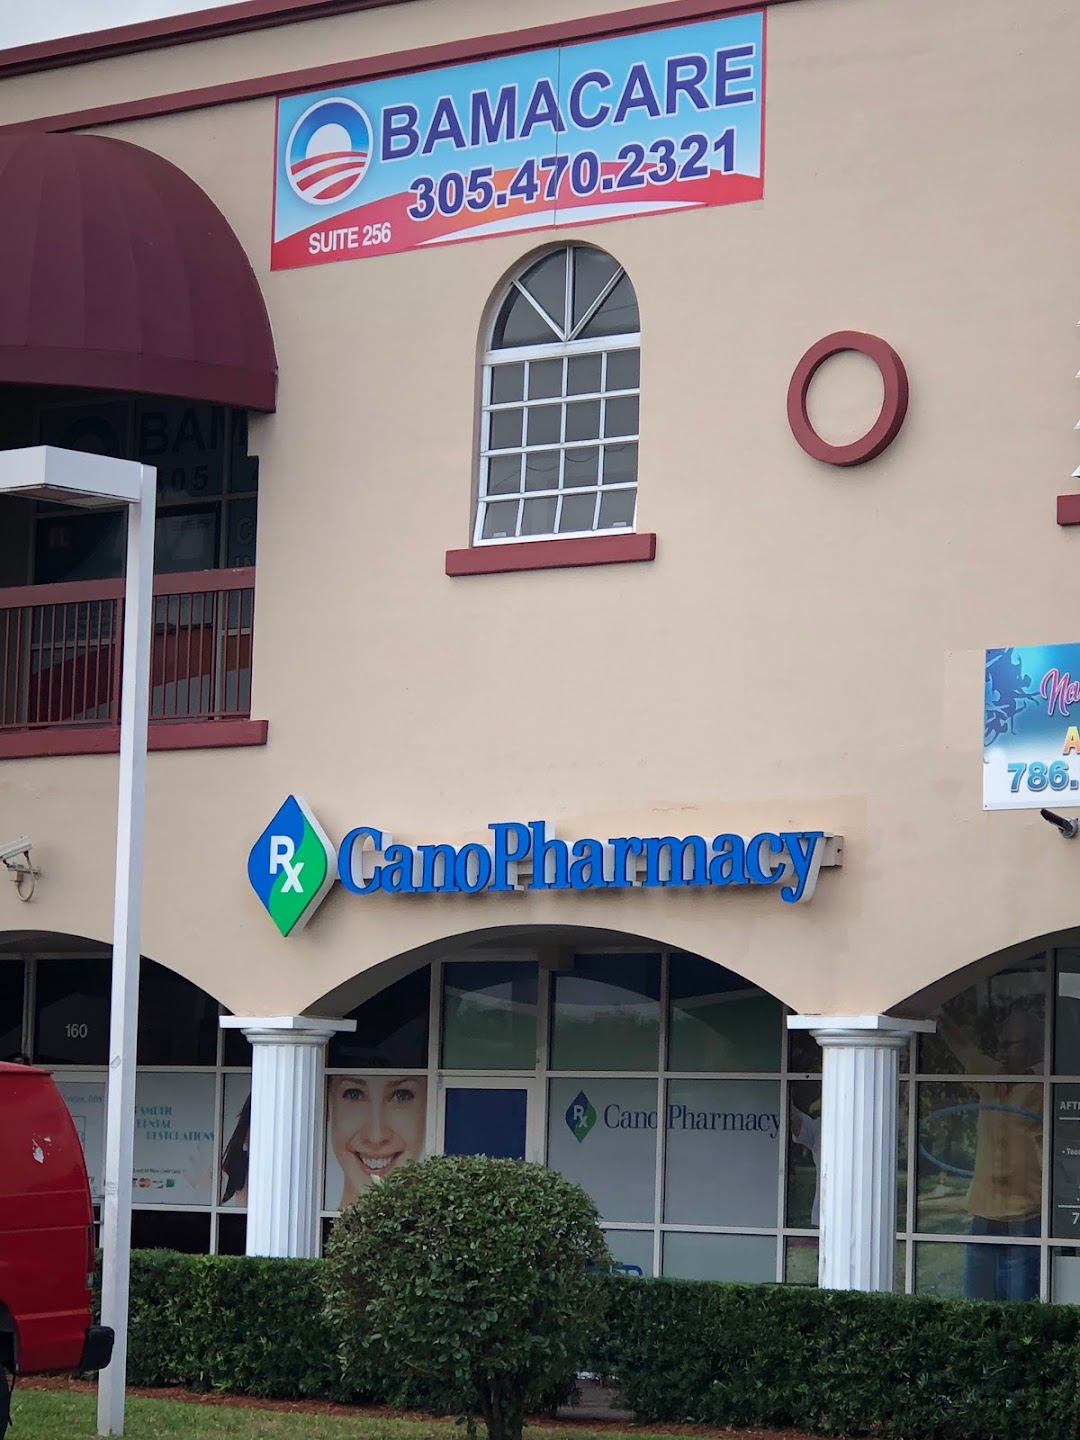 Cano Pharmacy